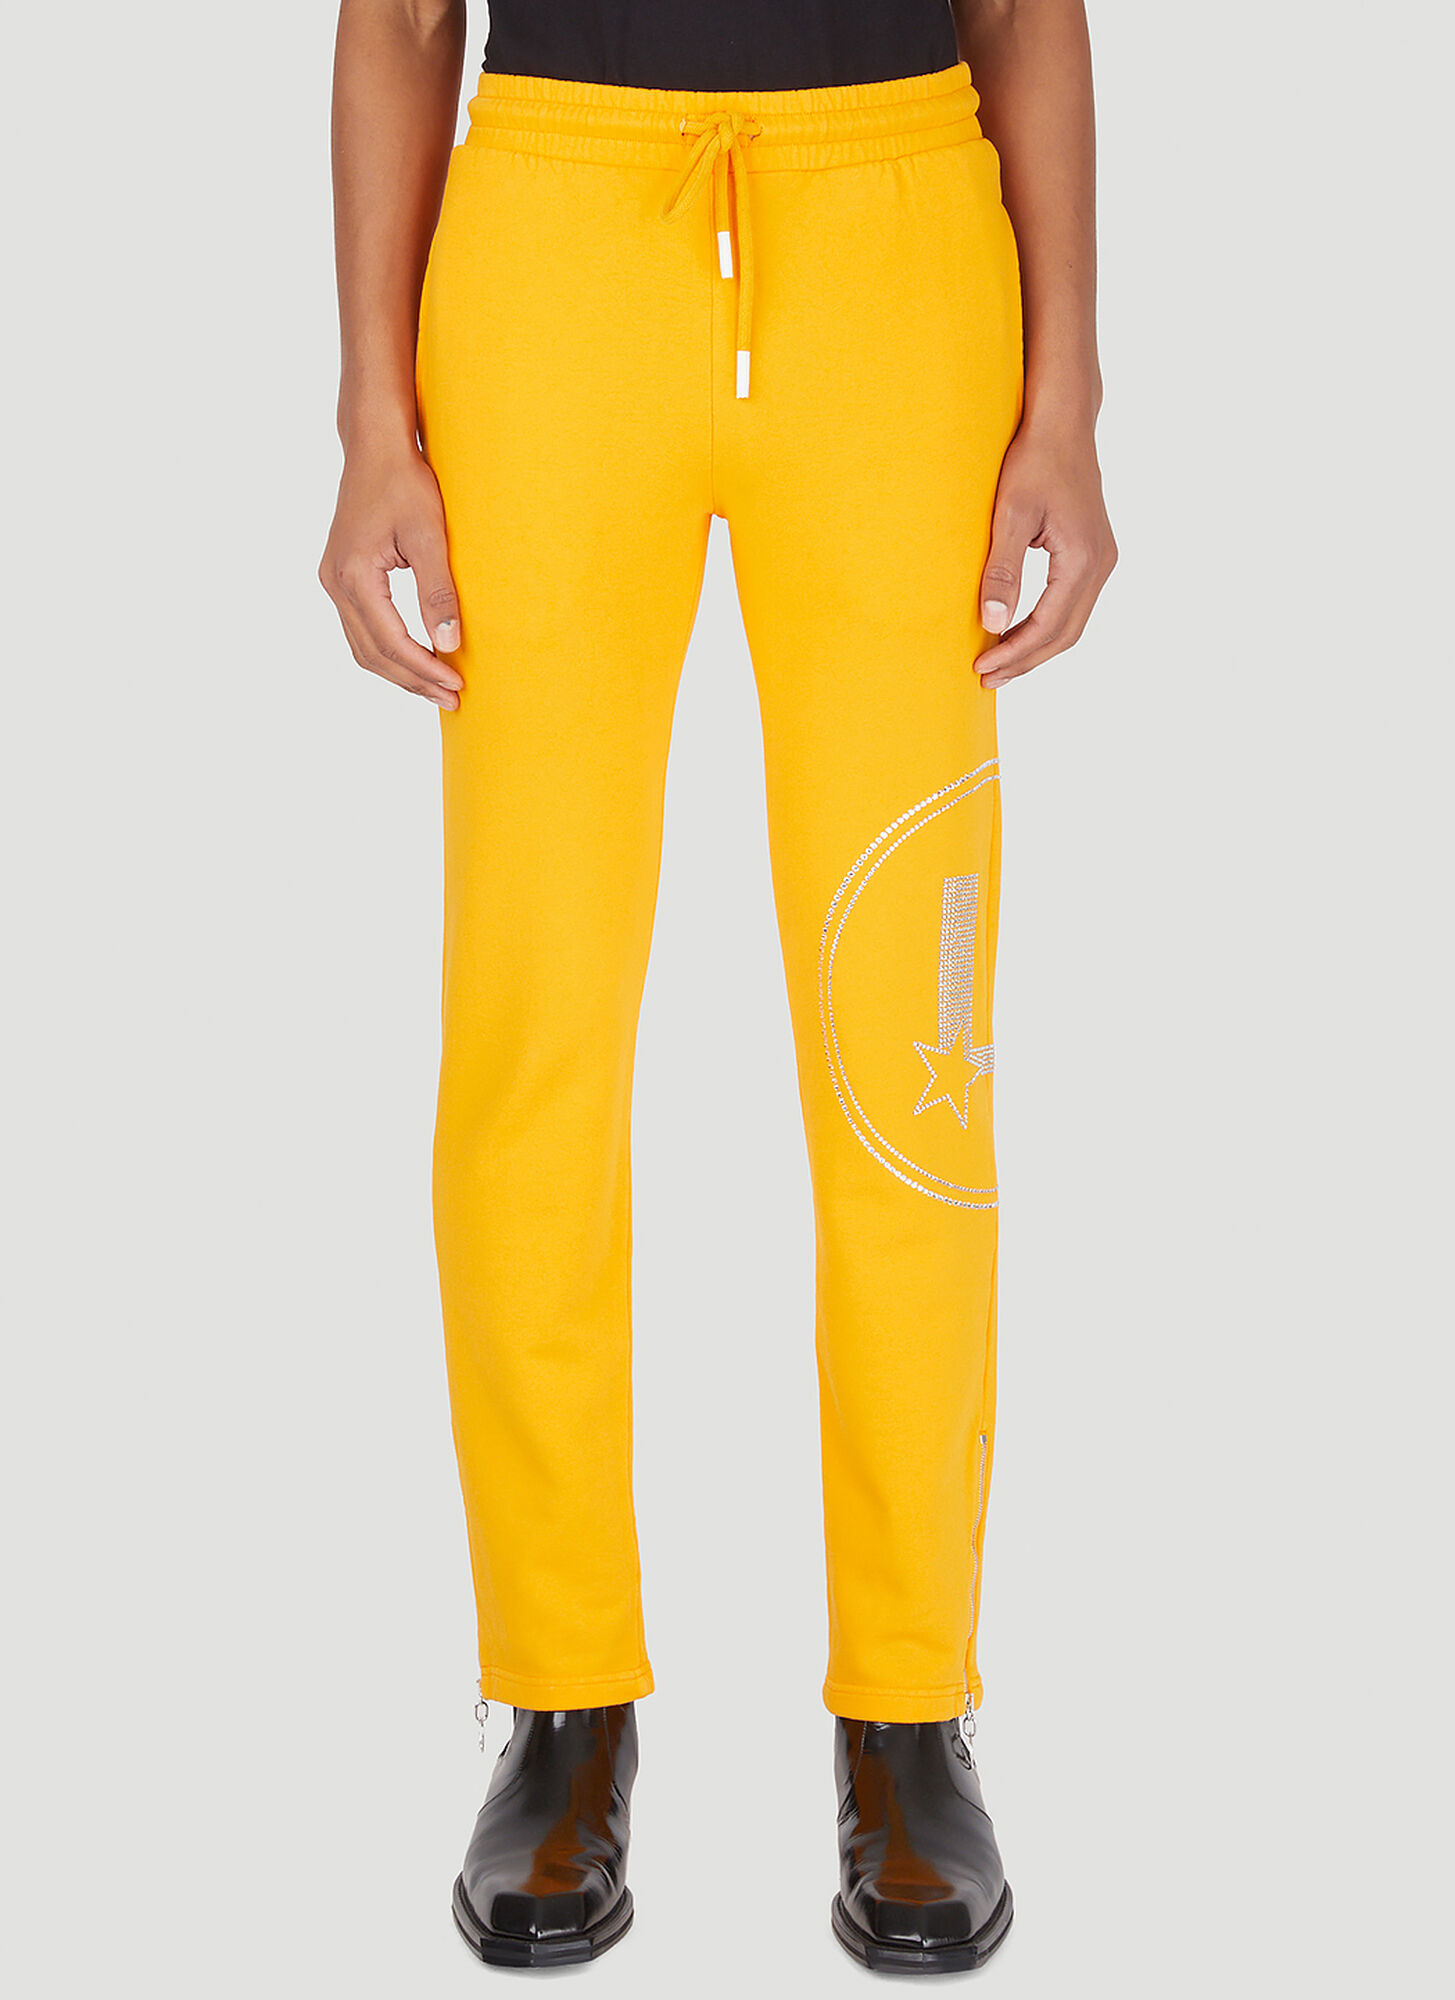 Lourdes Sequin Graphic Track Trousers Unisex Orange